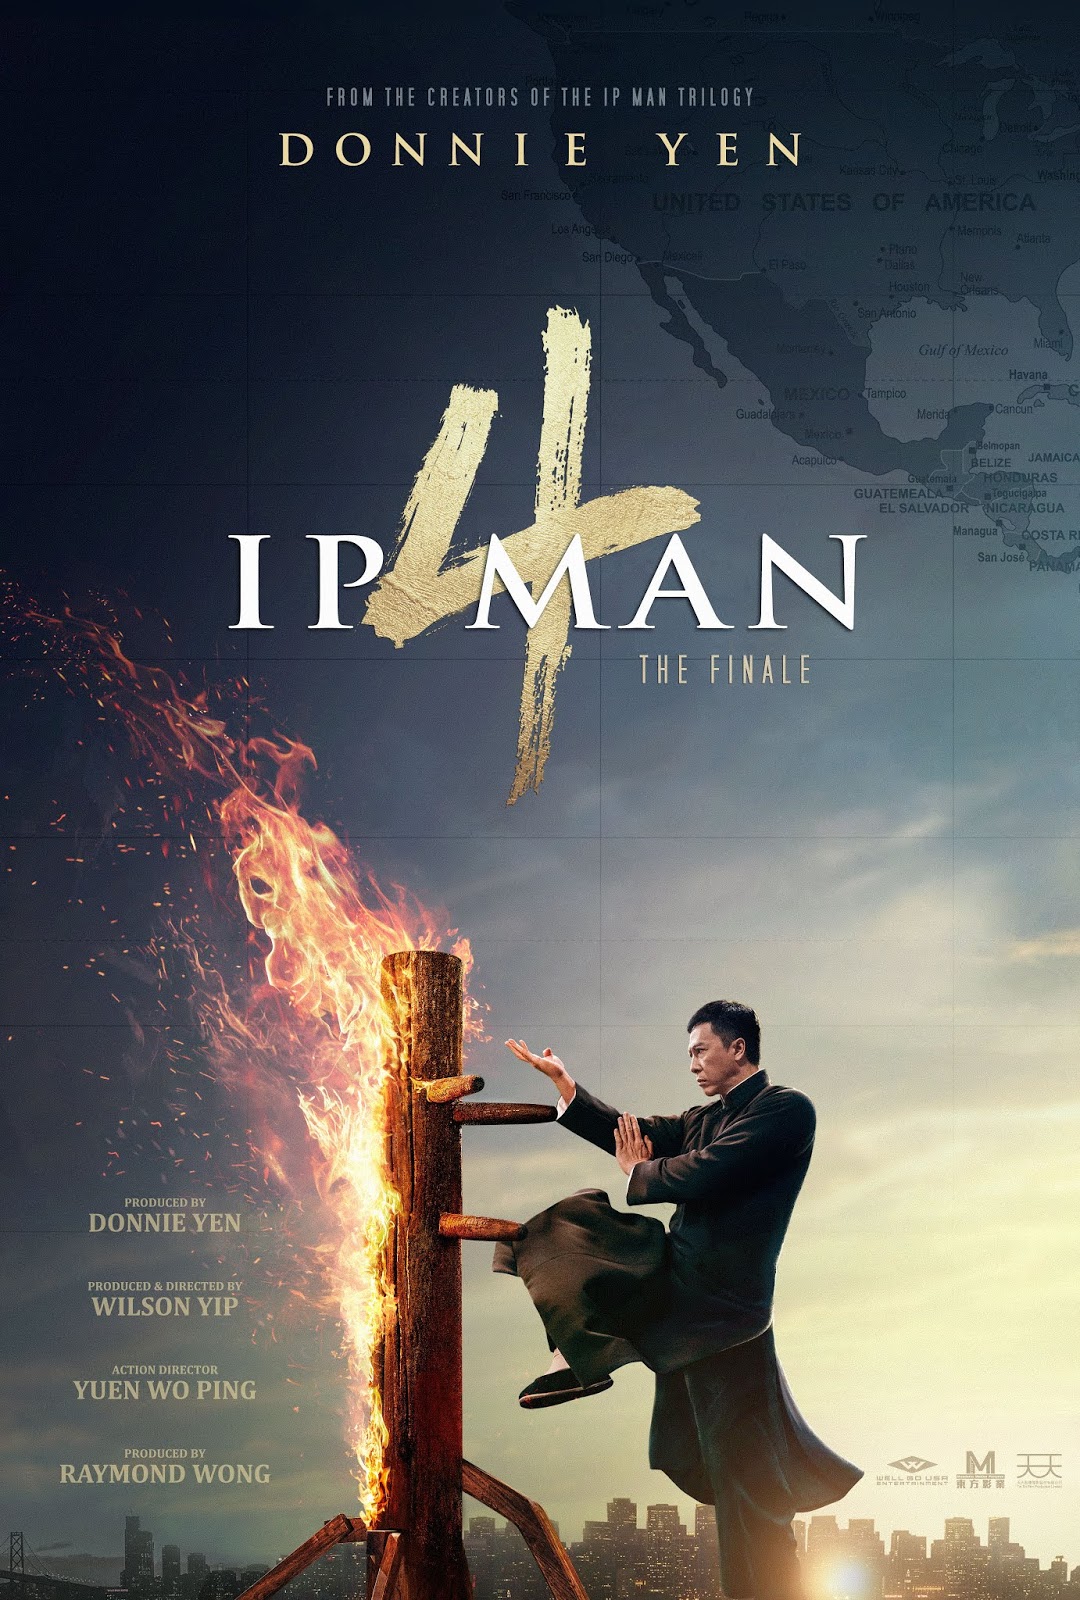 Ip Man 4 [2020] [DVDR] [NTSC] [Latino]